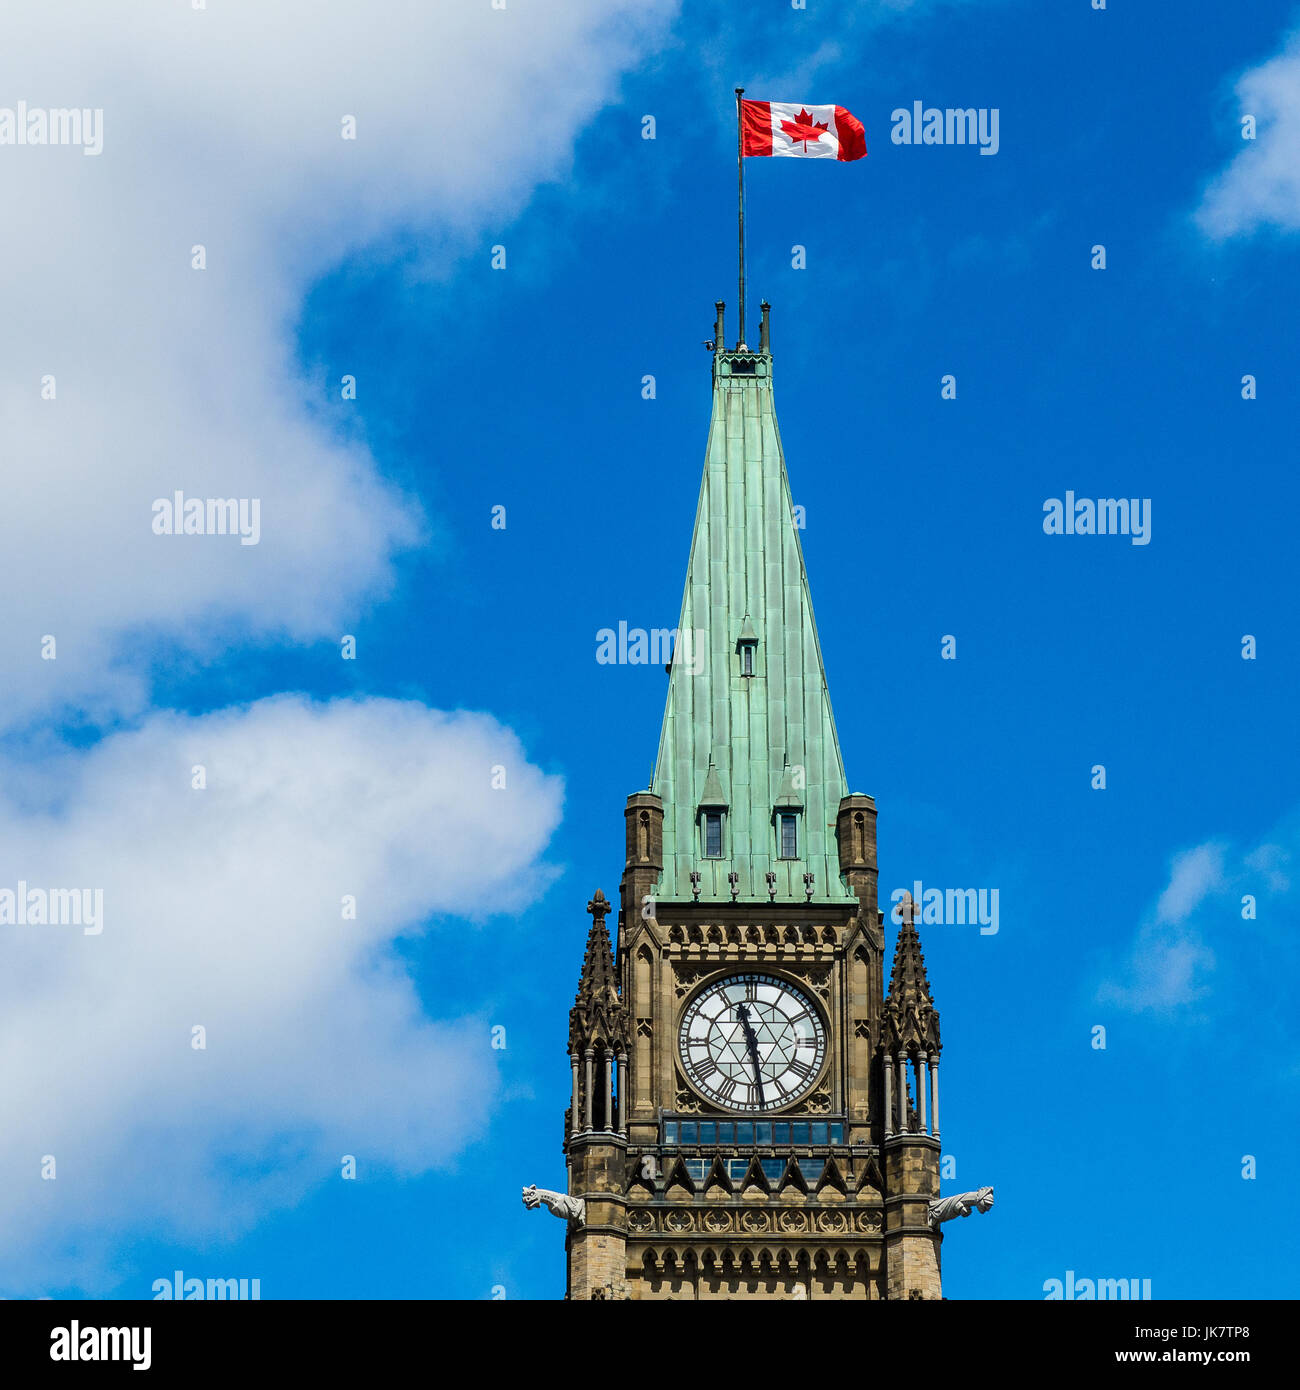 Drapeau du Canada de haut vol sur la Tour de la paix, des édifices du Parlement, Ottawa, Canada Banque D'Images